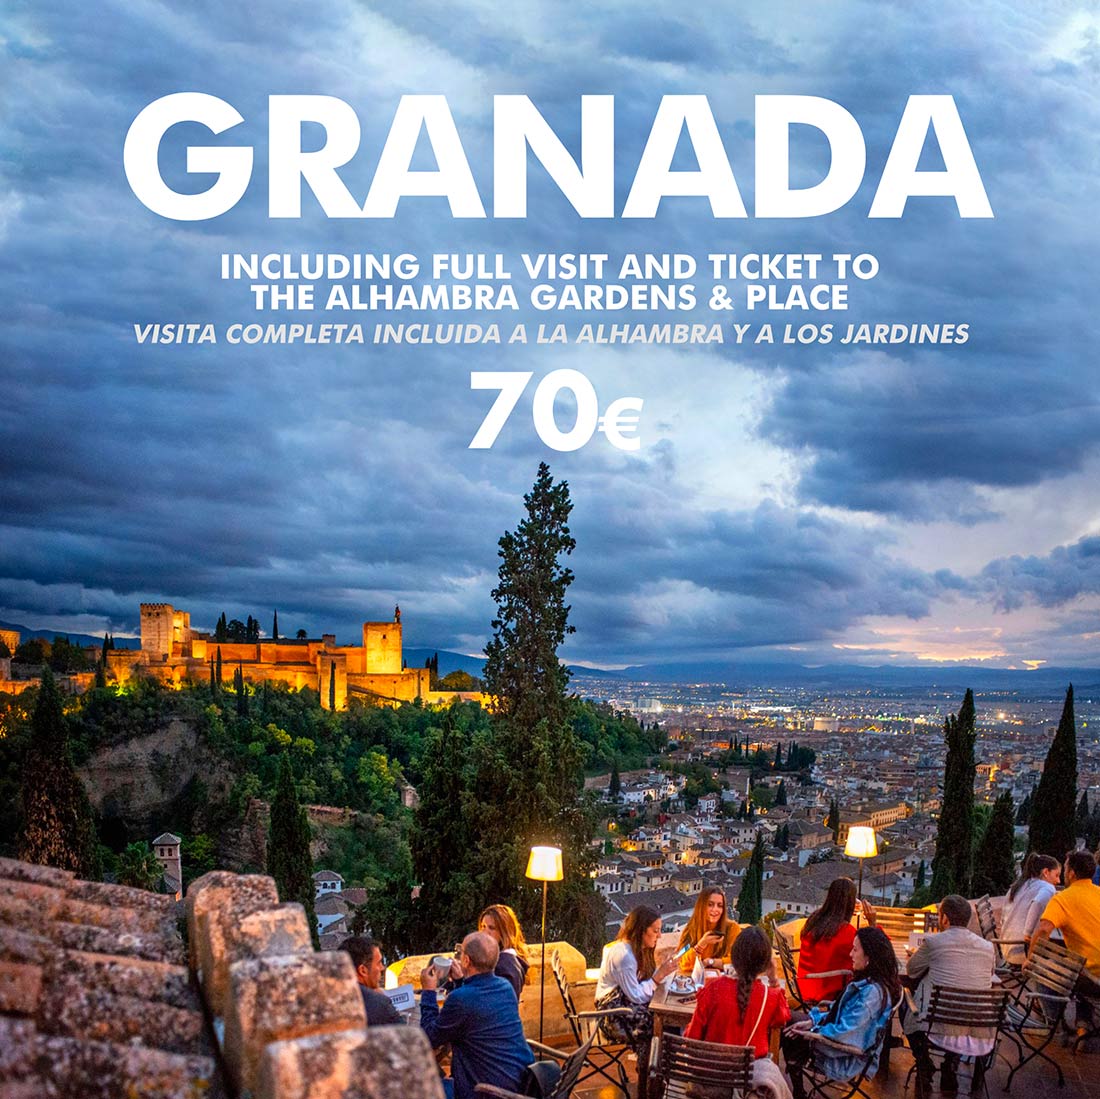 Granada Day Trip